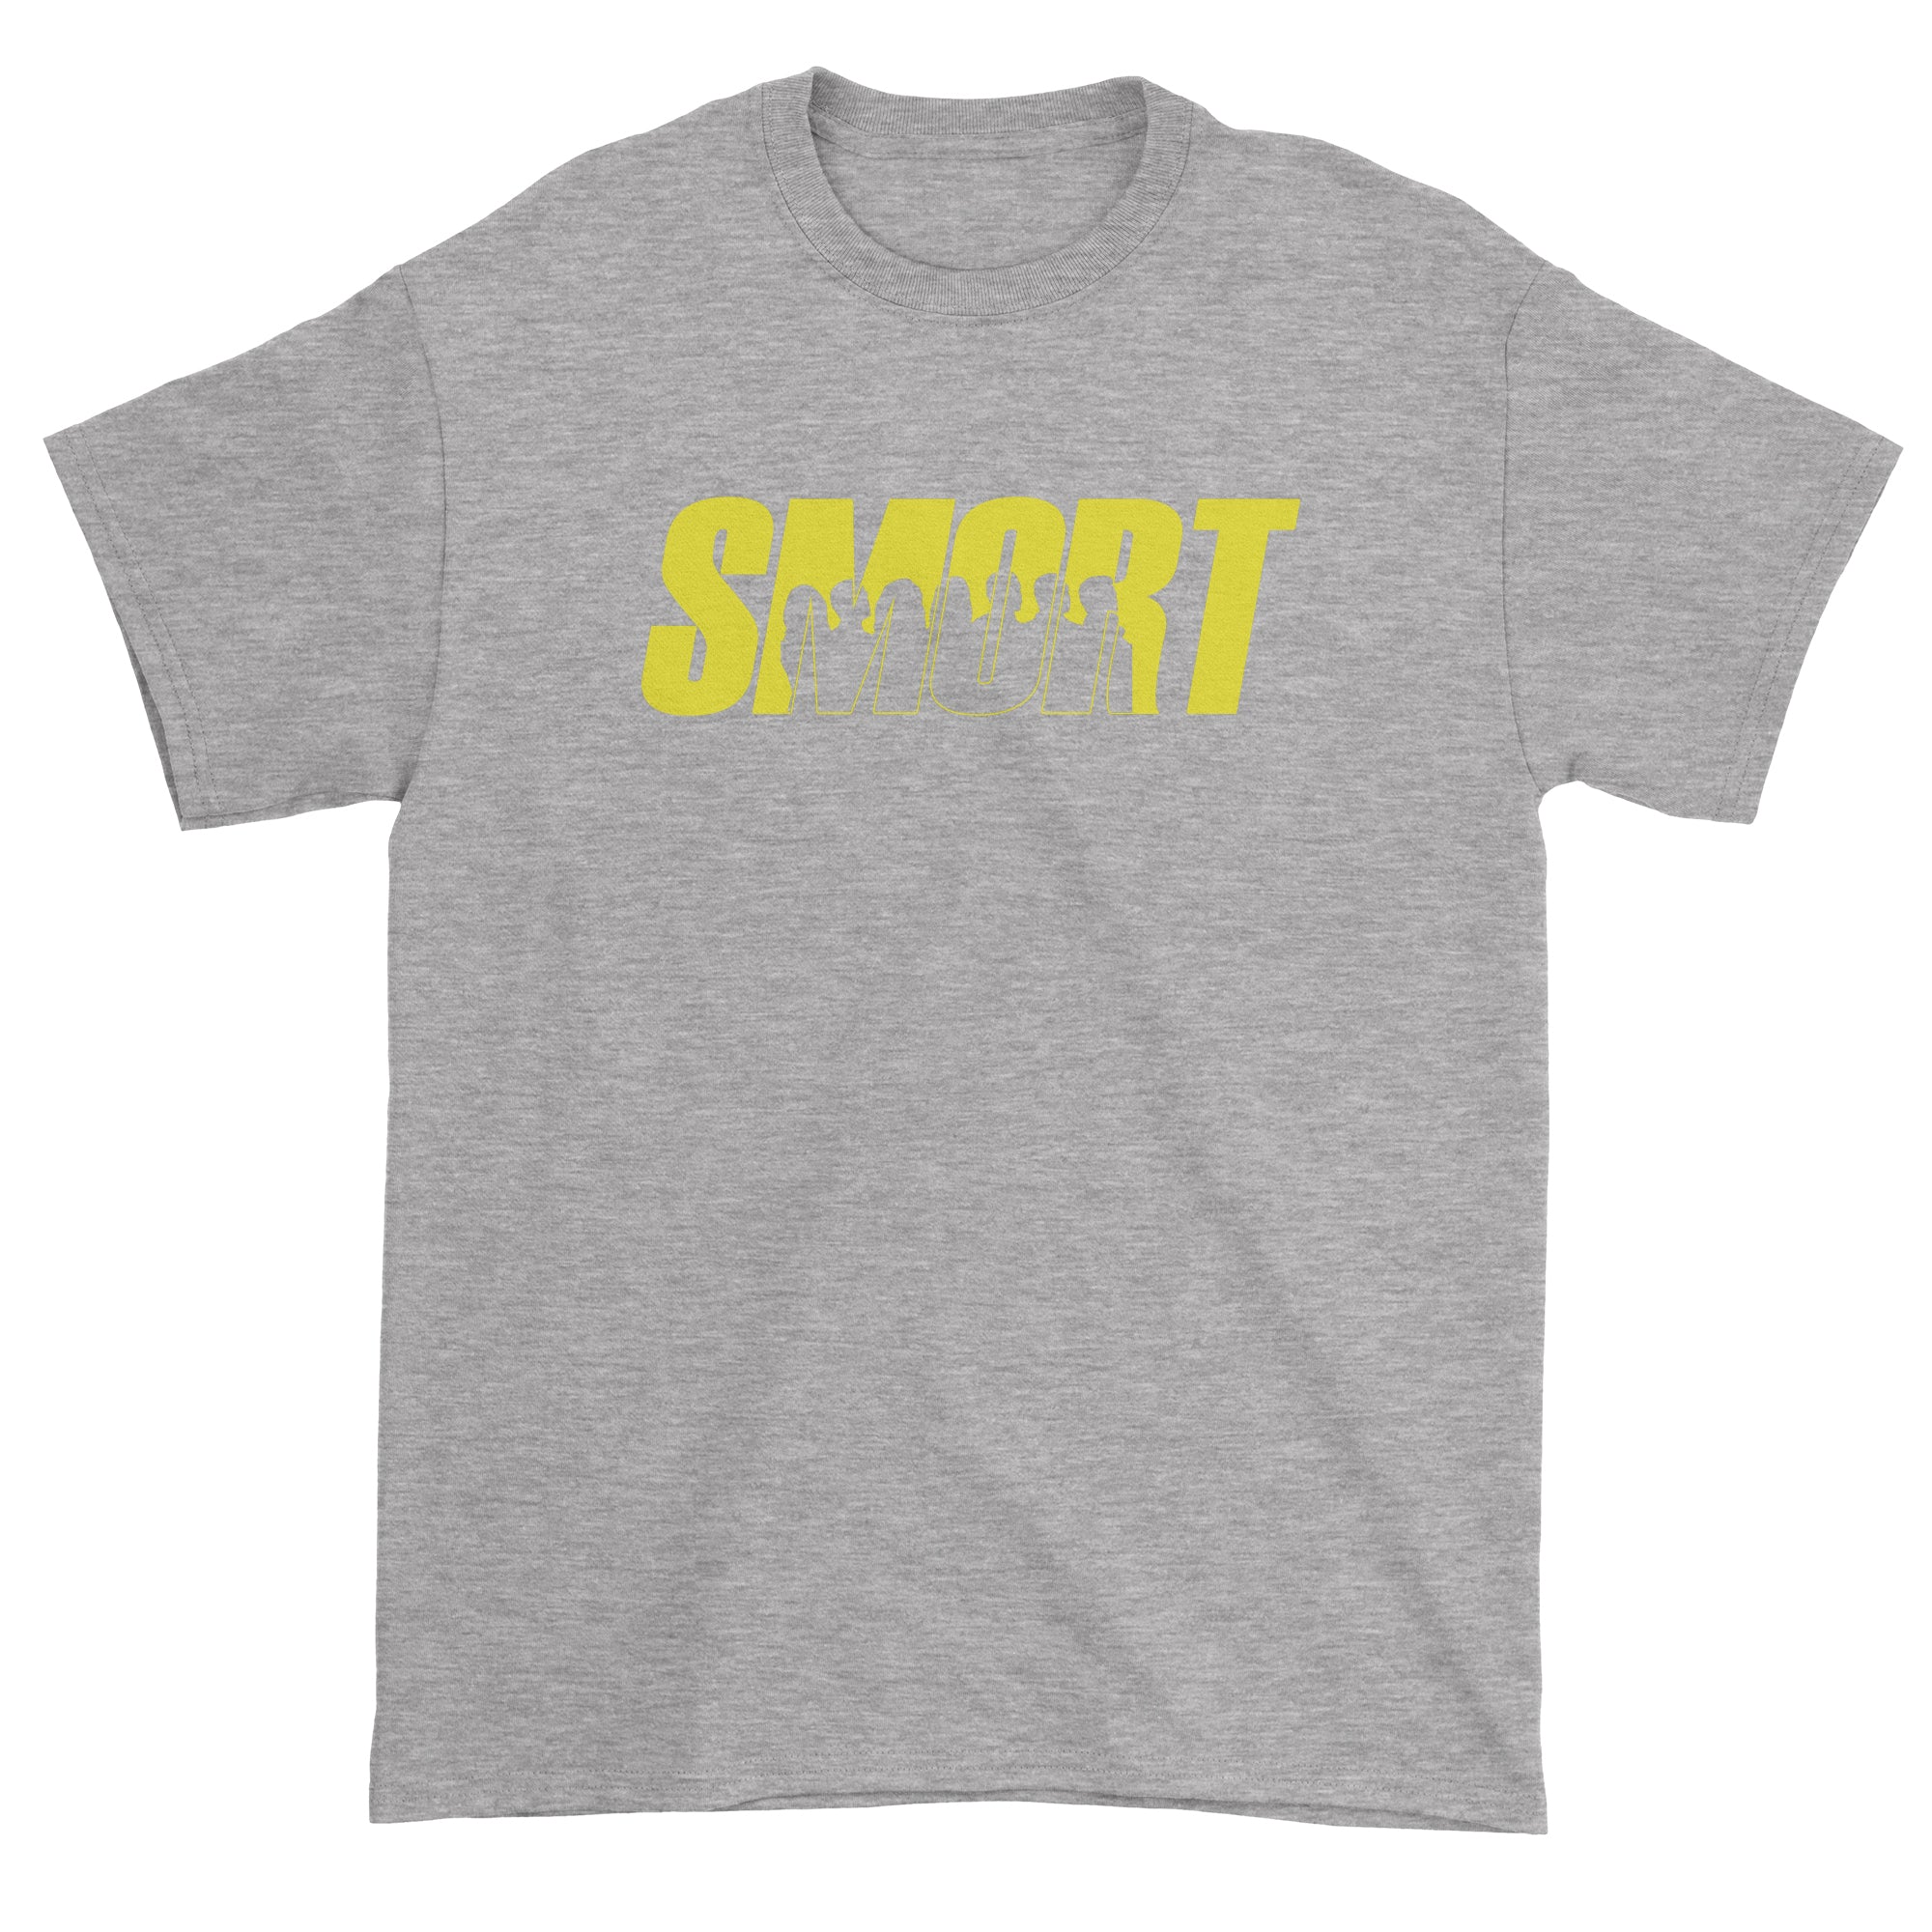 Smort Brooklyn 99 Funny Men's T-Shirt